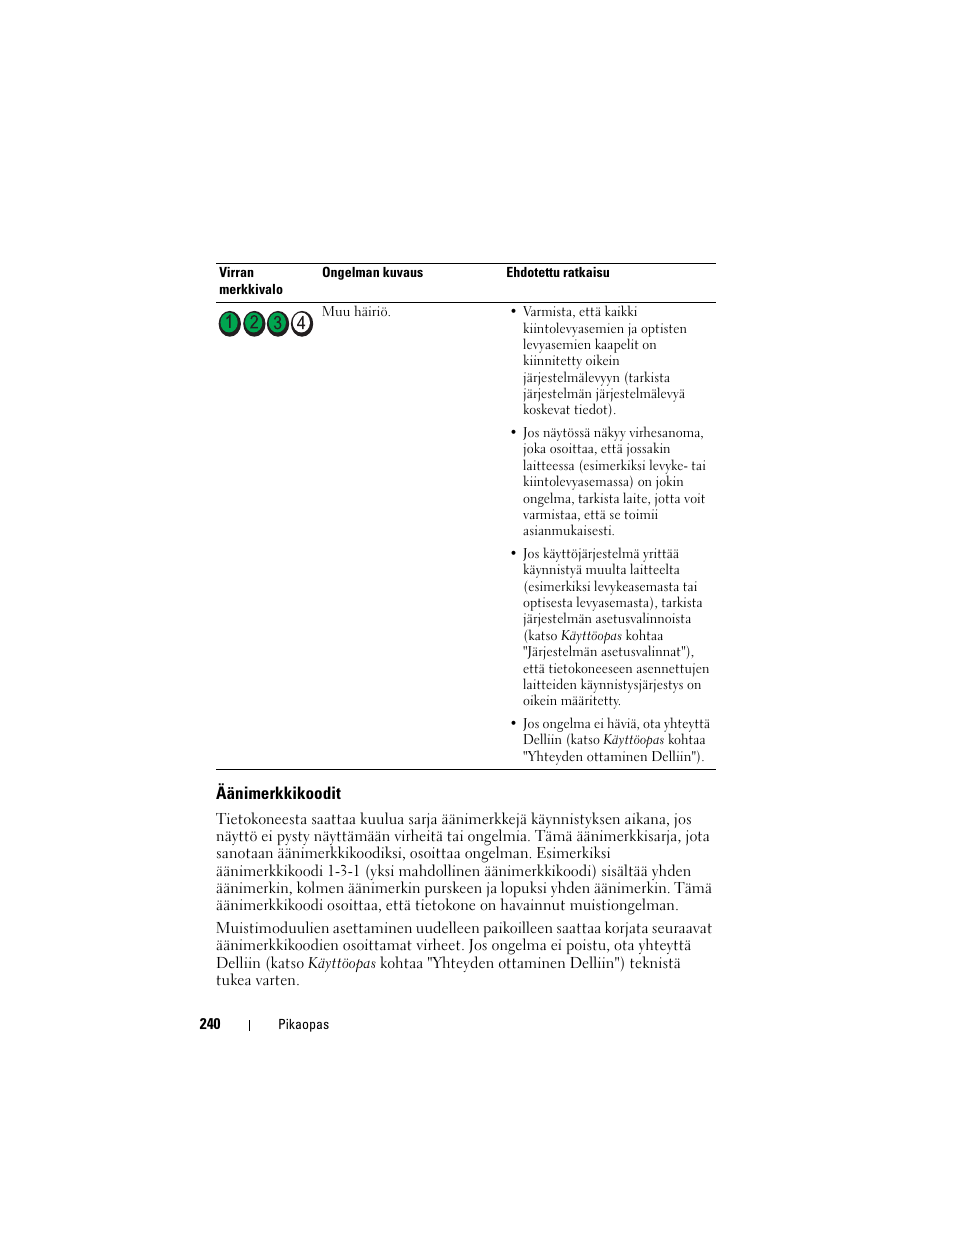 Äänimerkkikoodit, Äänimerkkikoodit" sivulla 240 | Инструкция по эксплуатации Dell OptiPlex 755 | Страница 240 / 602